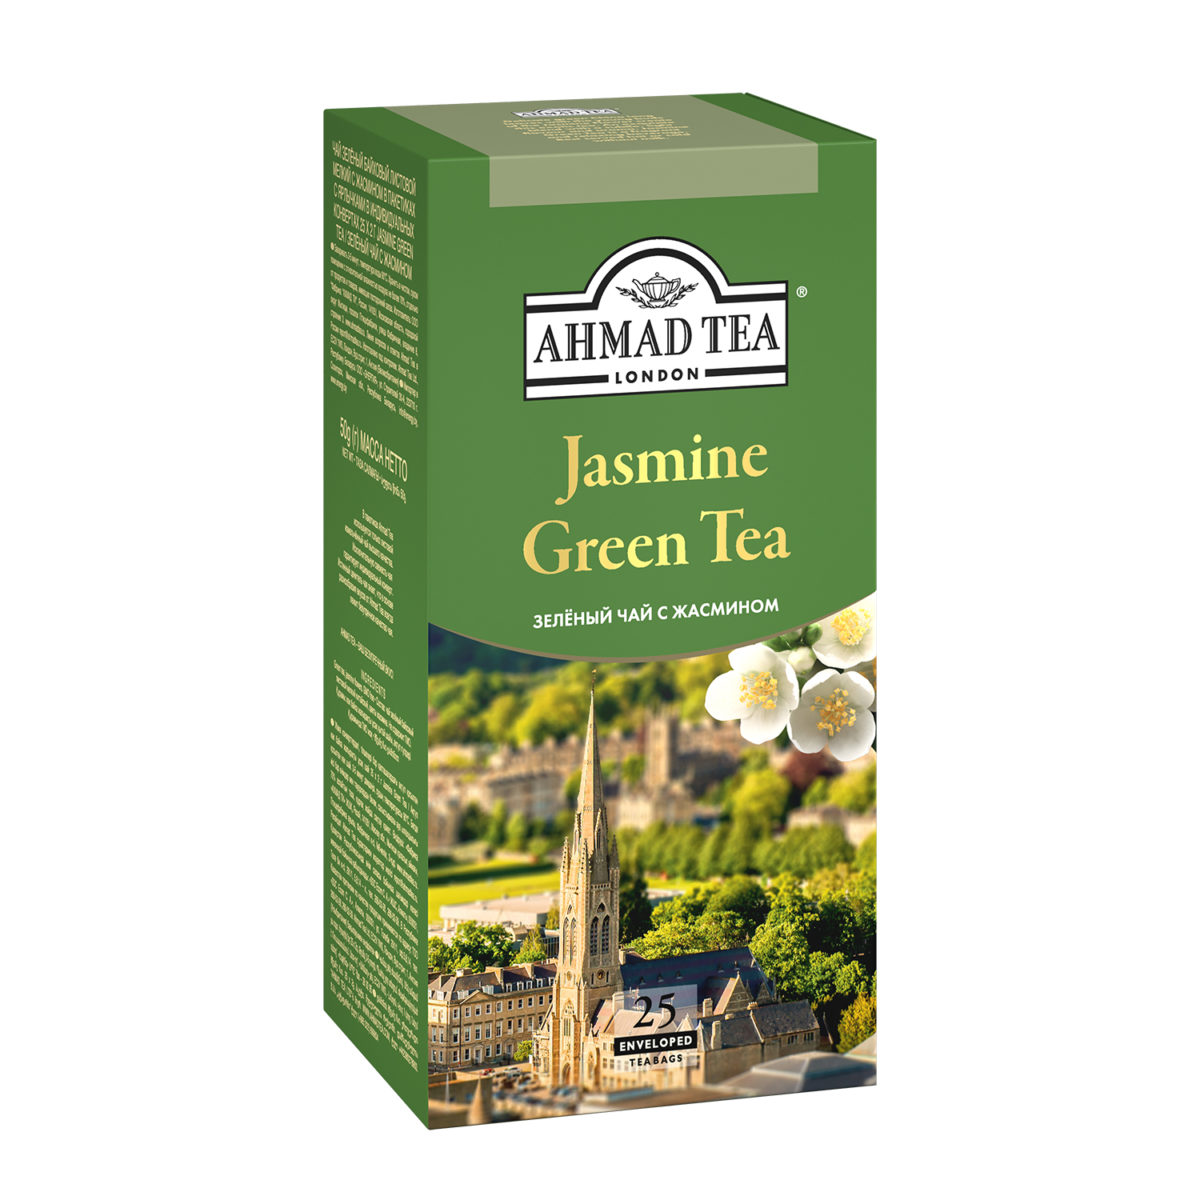 Organic Jasmine Tea, Full Leaf, in Pyramid Tea Bags - Paromi Tea